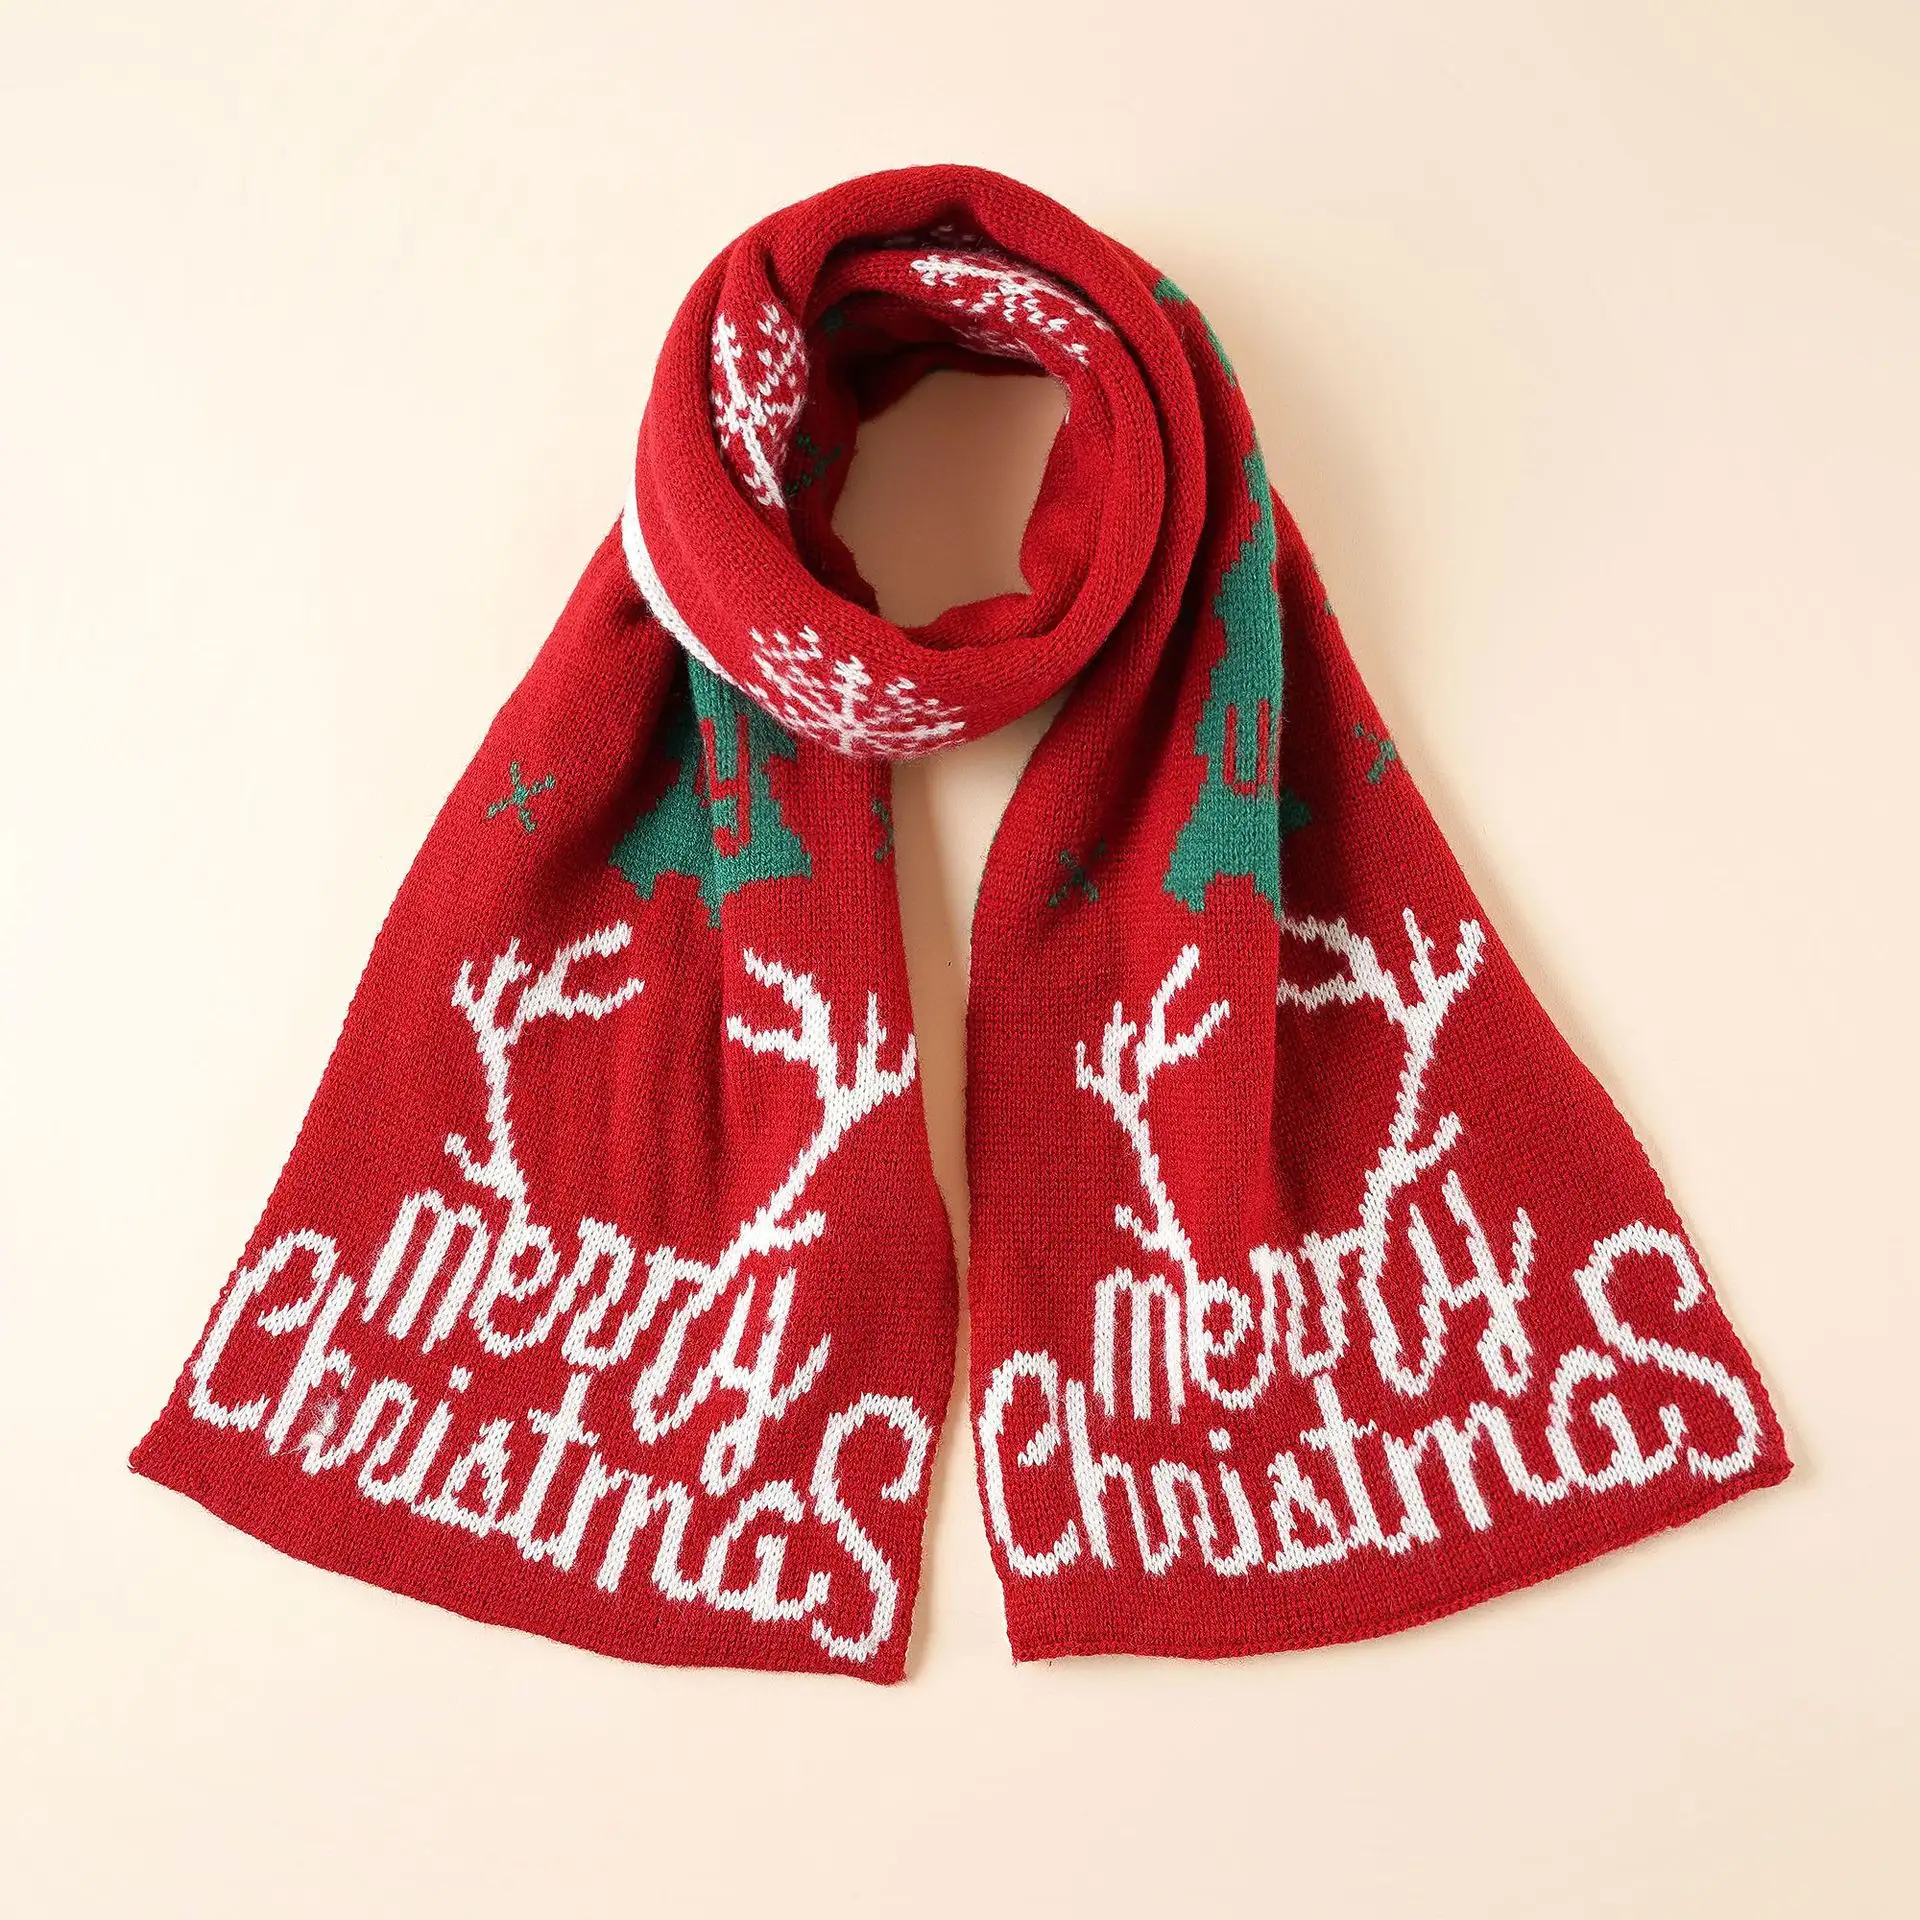 Echarpe d'hiver pour garder la chaleur Acrylique Accessoires parent-enfant Elk Joyeux Noël Echarpes tricotées Mode Echarpe de Noël unisexe